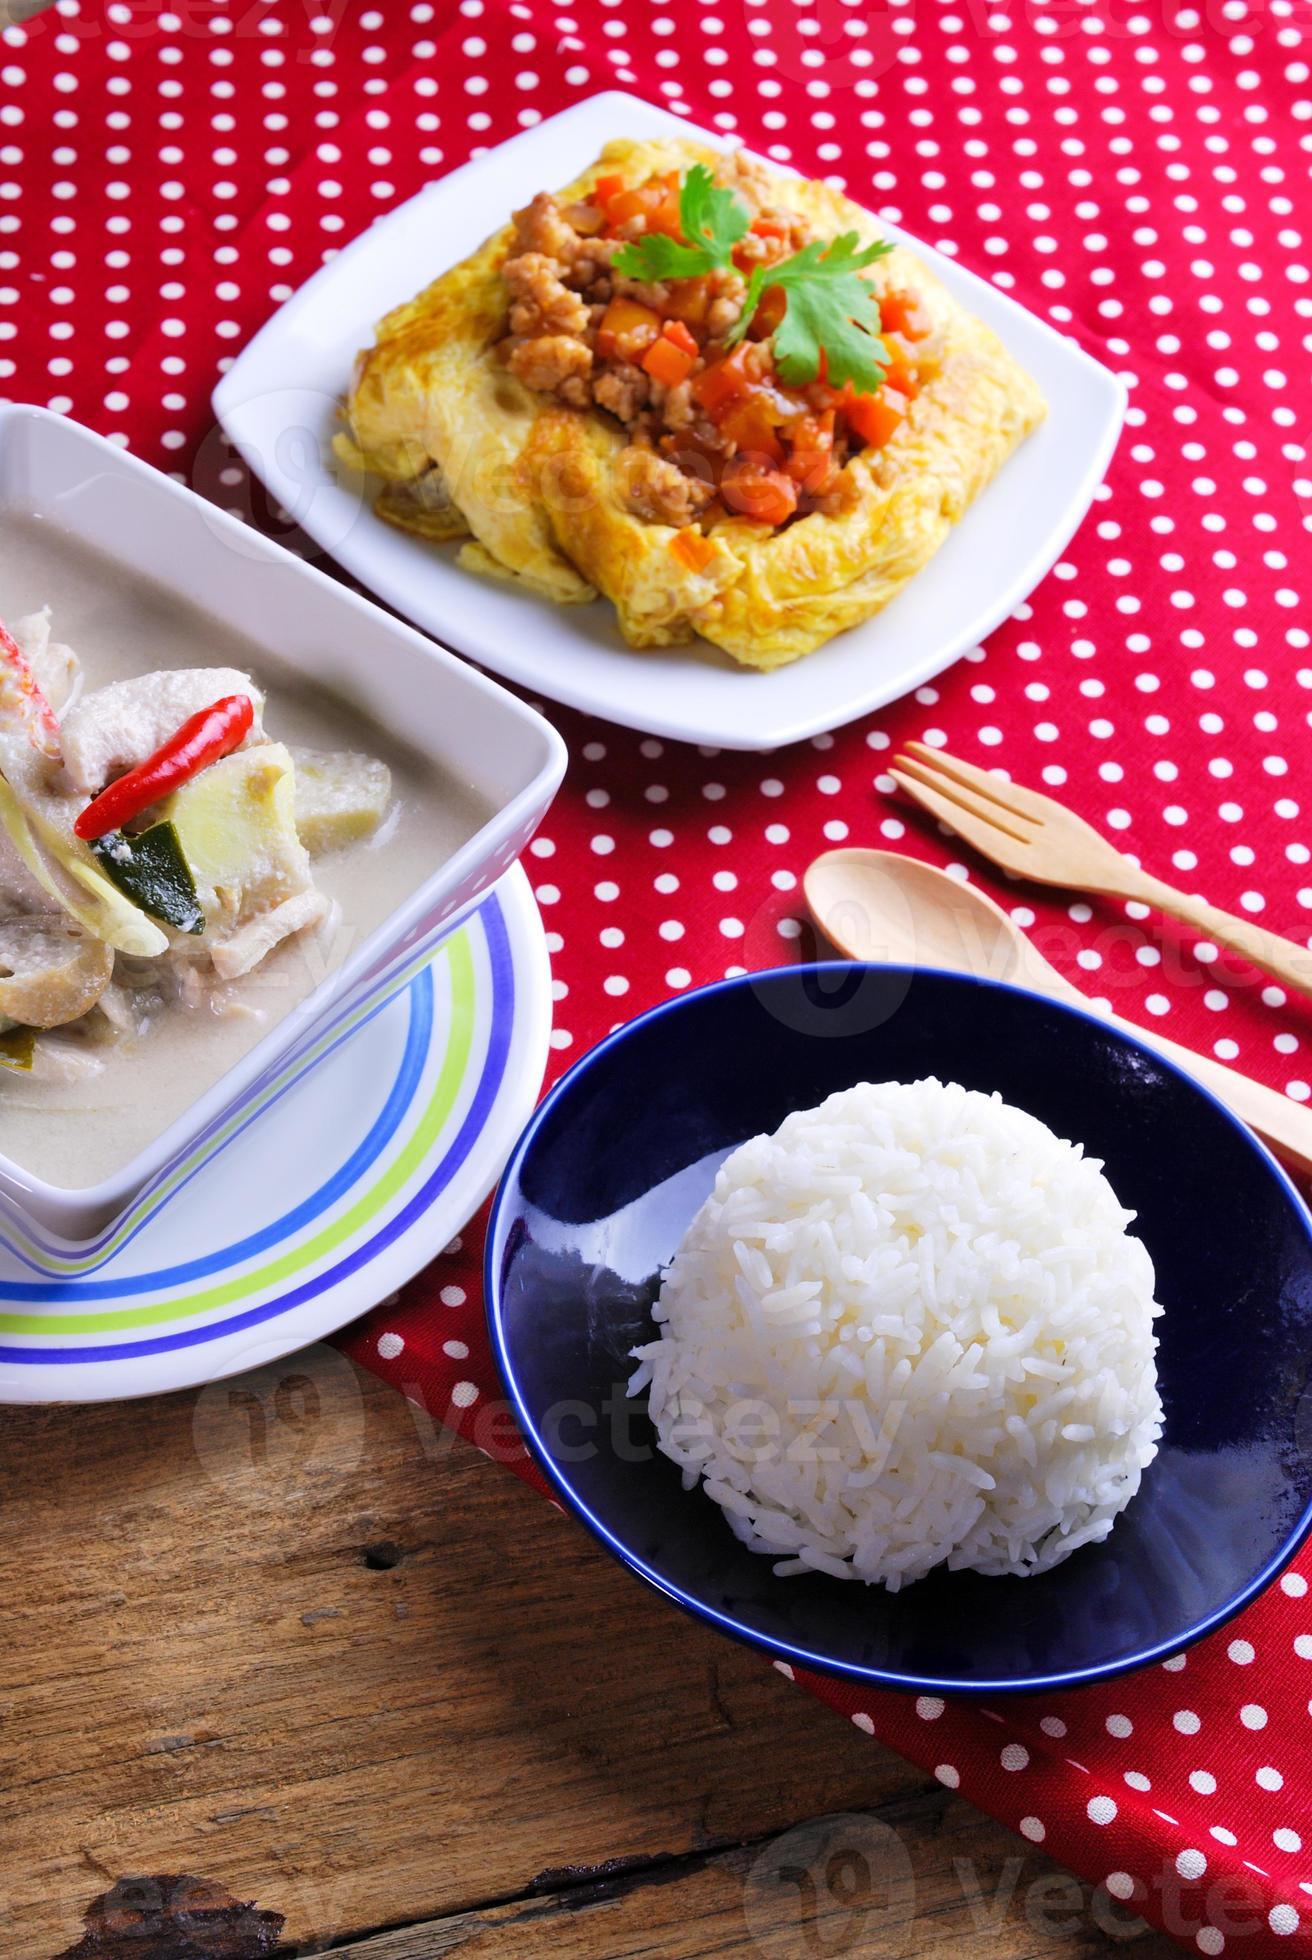 arroz, tortilla rellena y tom kha kai, pollo con coco foto